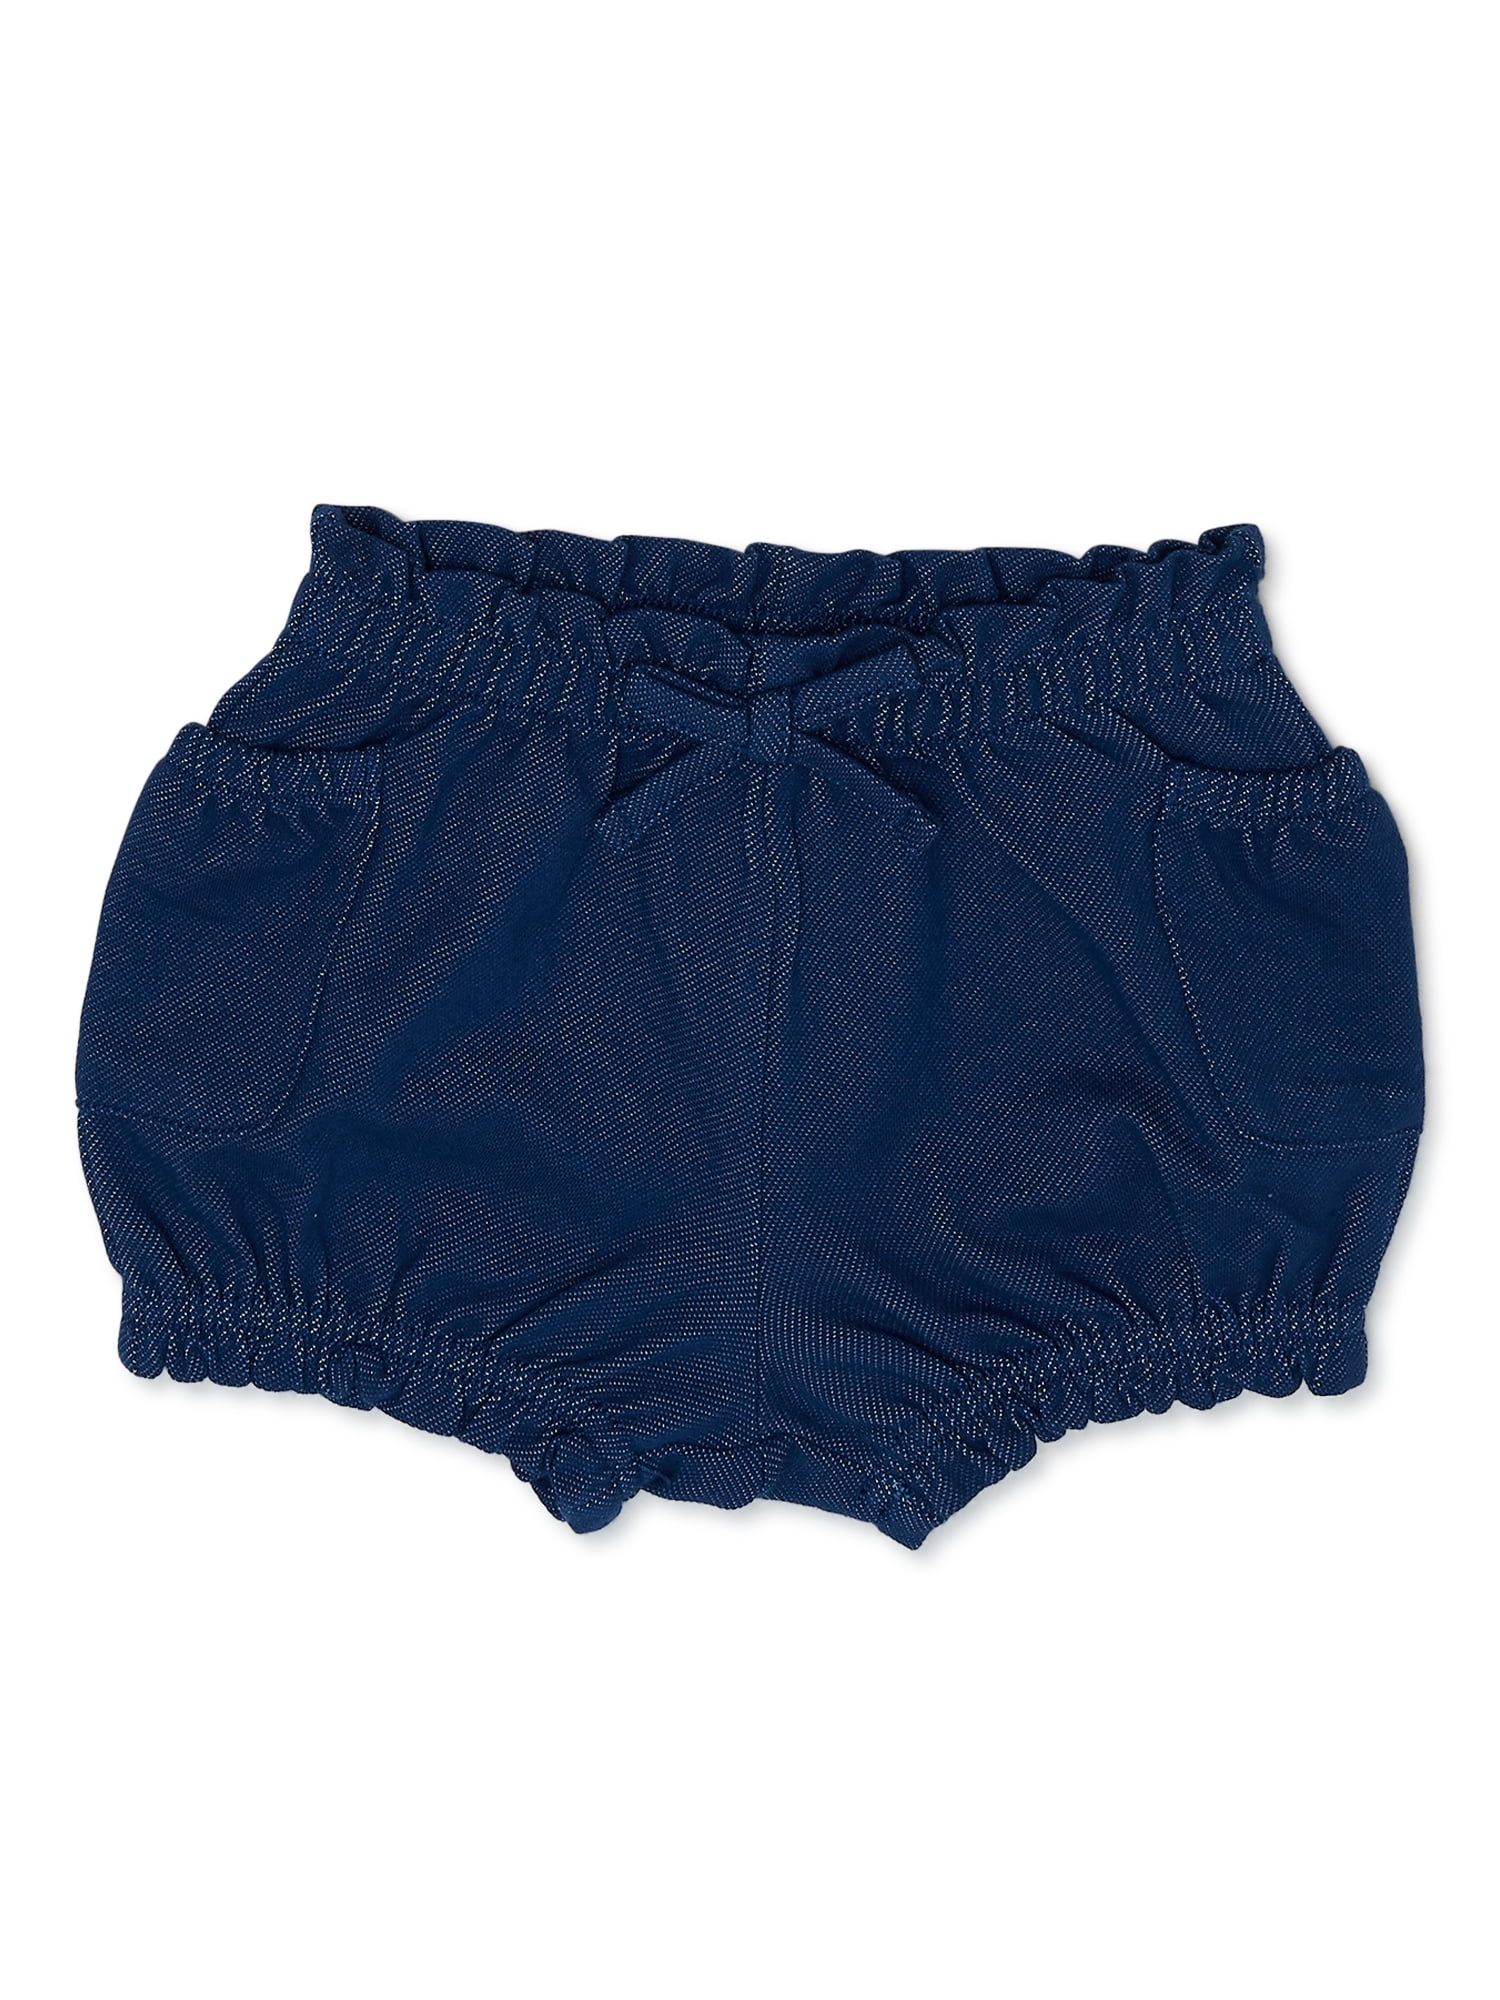 Garanimals Baby Girl Short Knit Denim Shorts, Sizes 0-24 Months | Walmart (US)